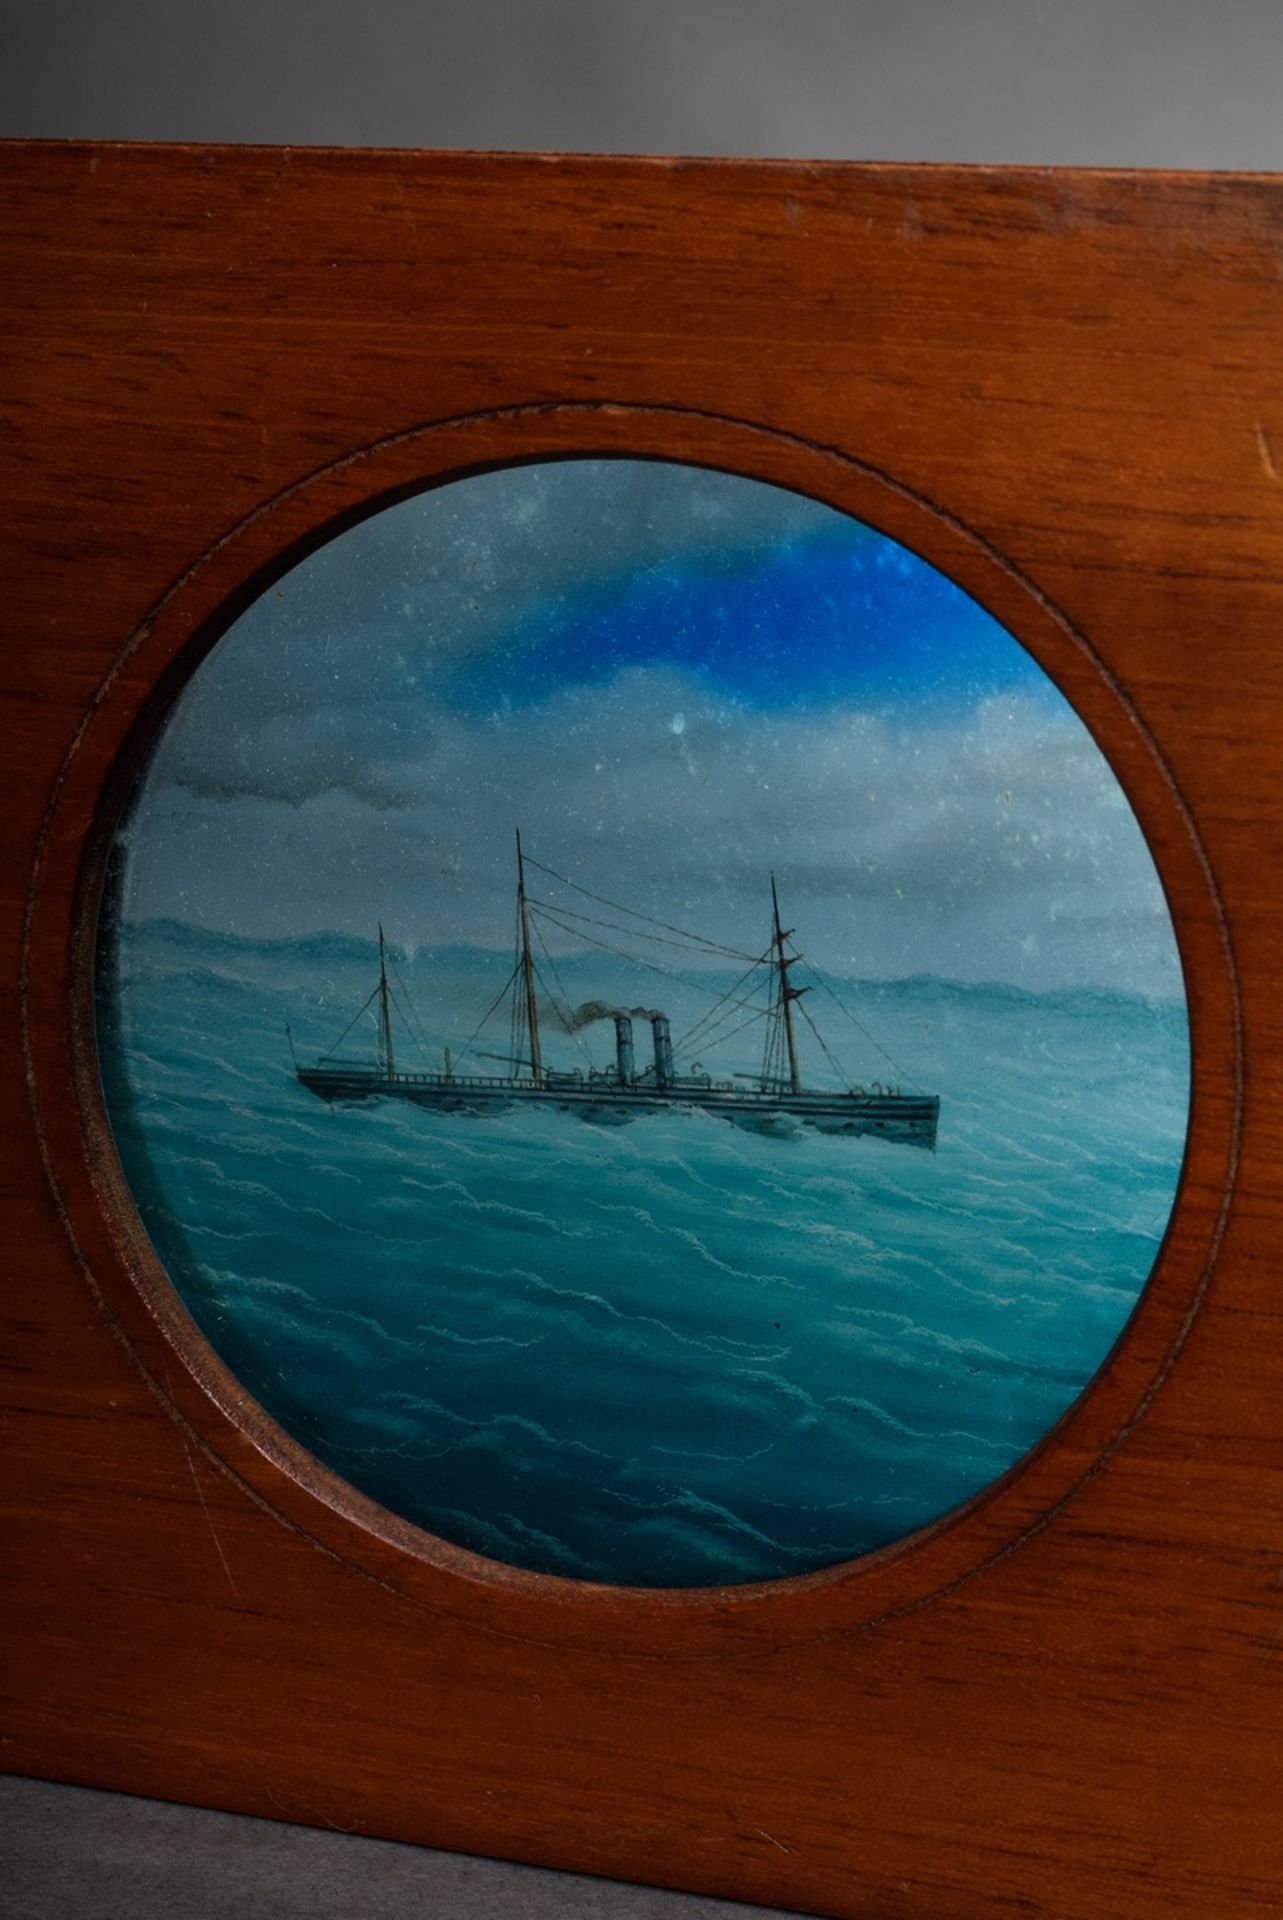 Dampferbild für Laterna Magica, beweglich mit Kurbel, Hinterglasmalerei, Ø 7,5cm, Slg. Övelgönner S - Bild 3 aus 4